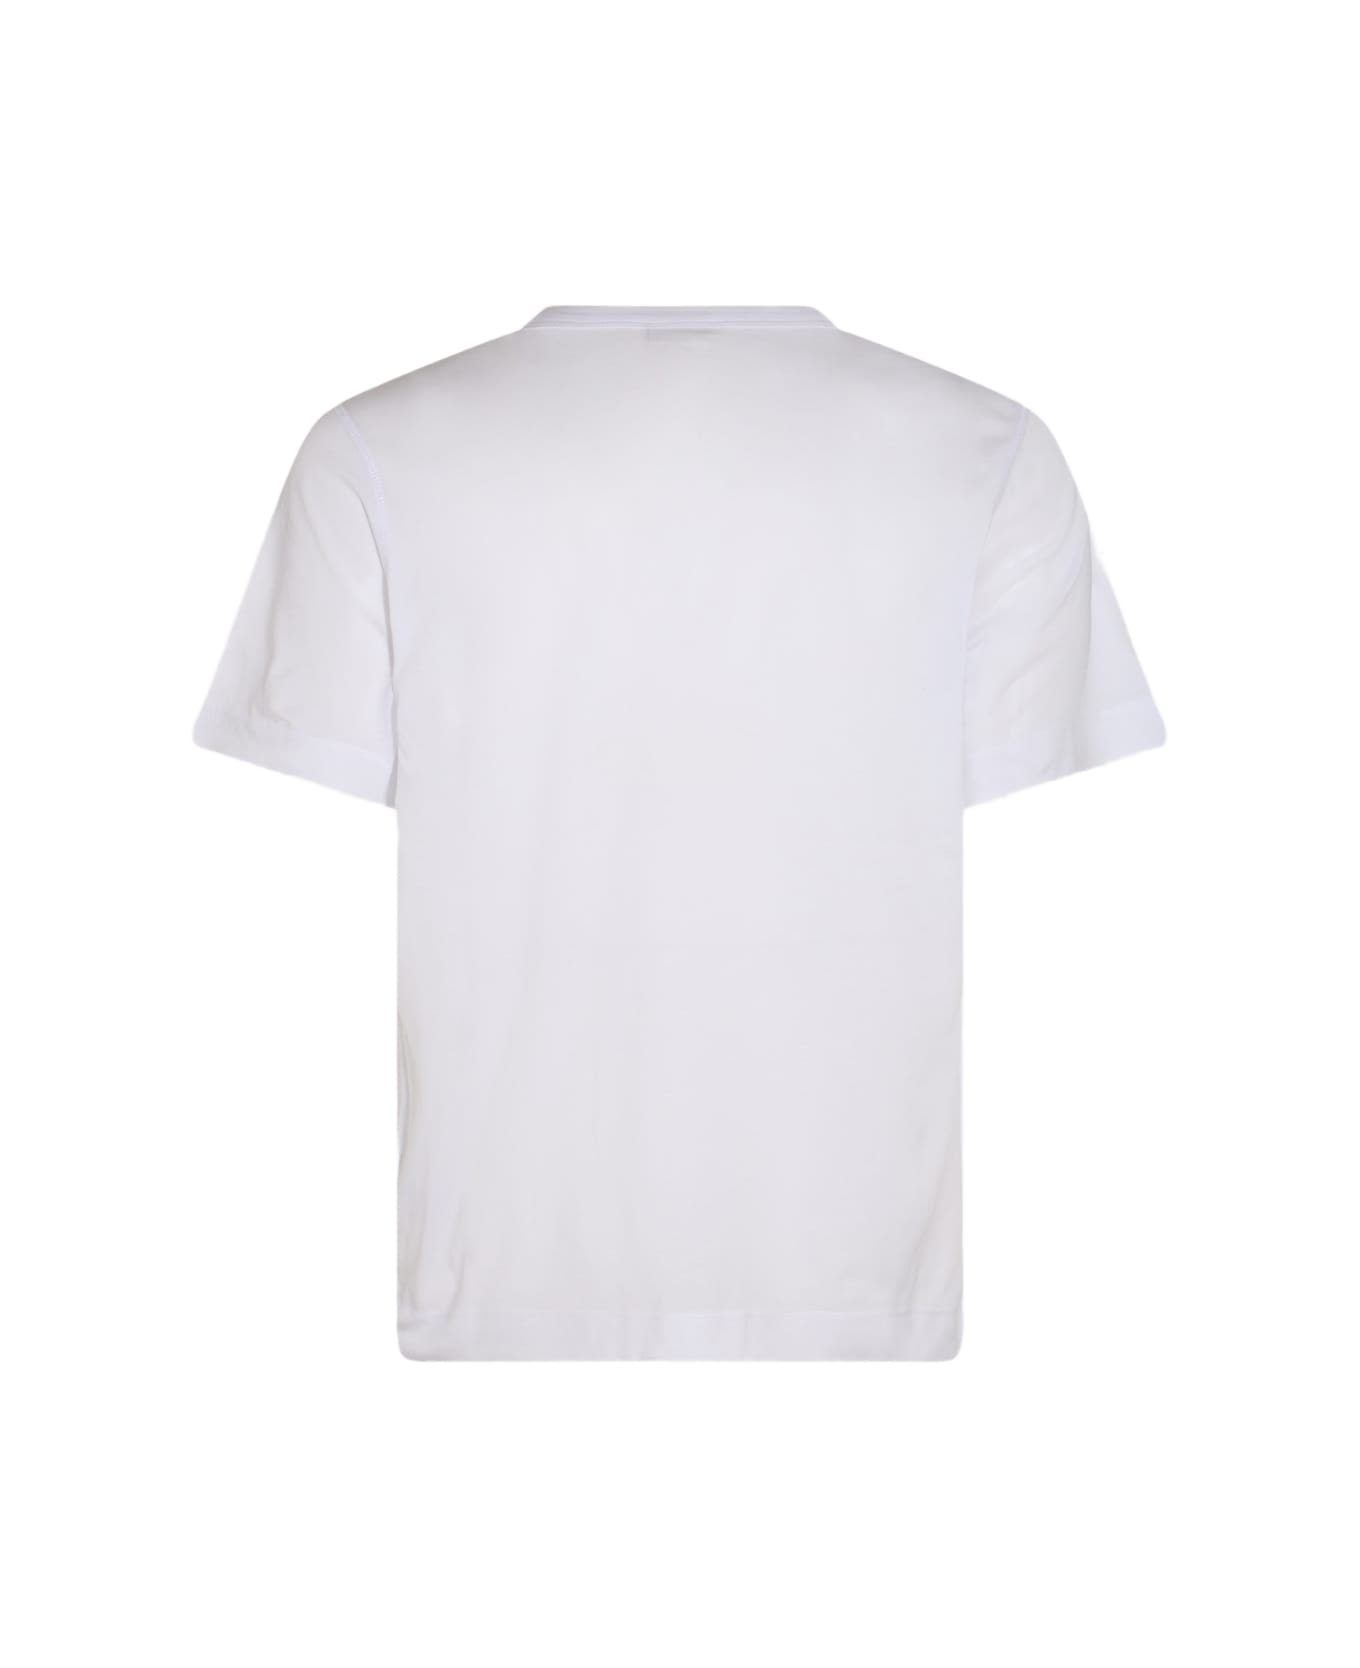 Dries Van Noten White Cotton T-shirt - White シャツ